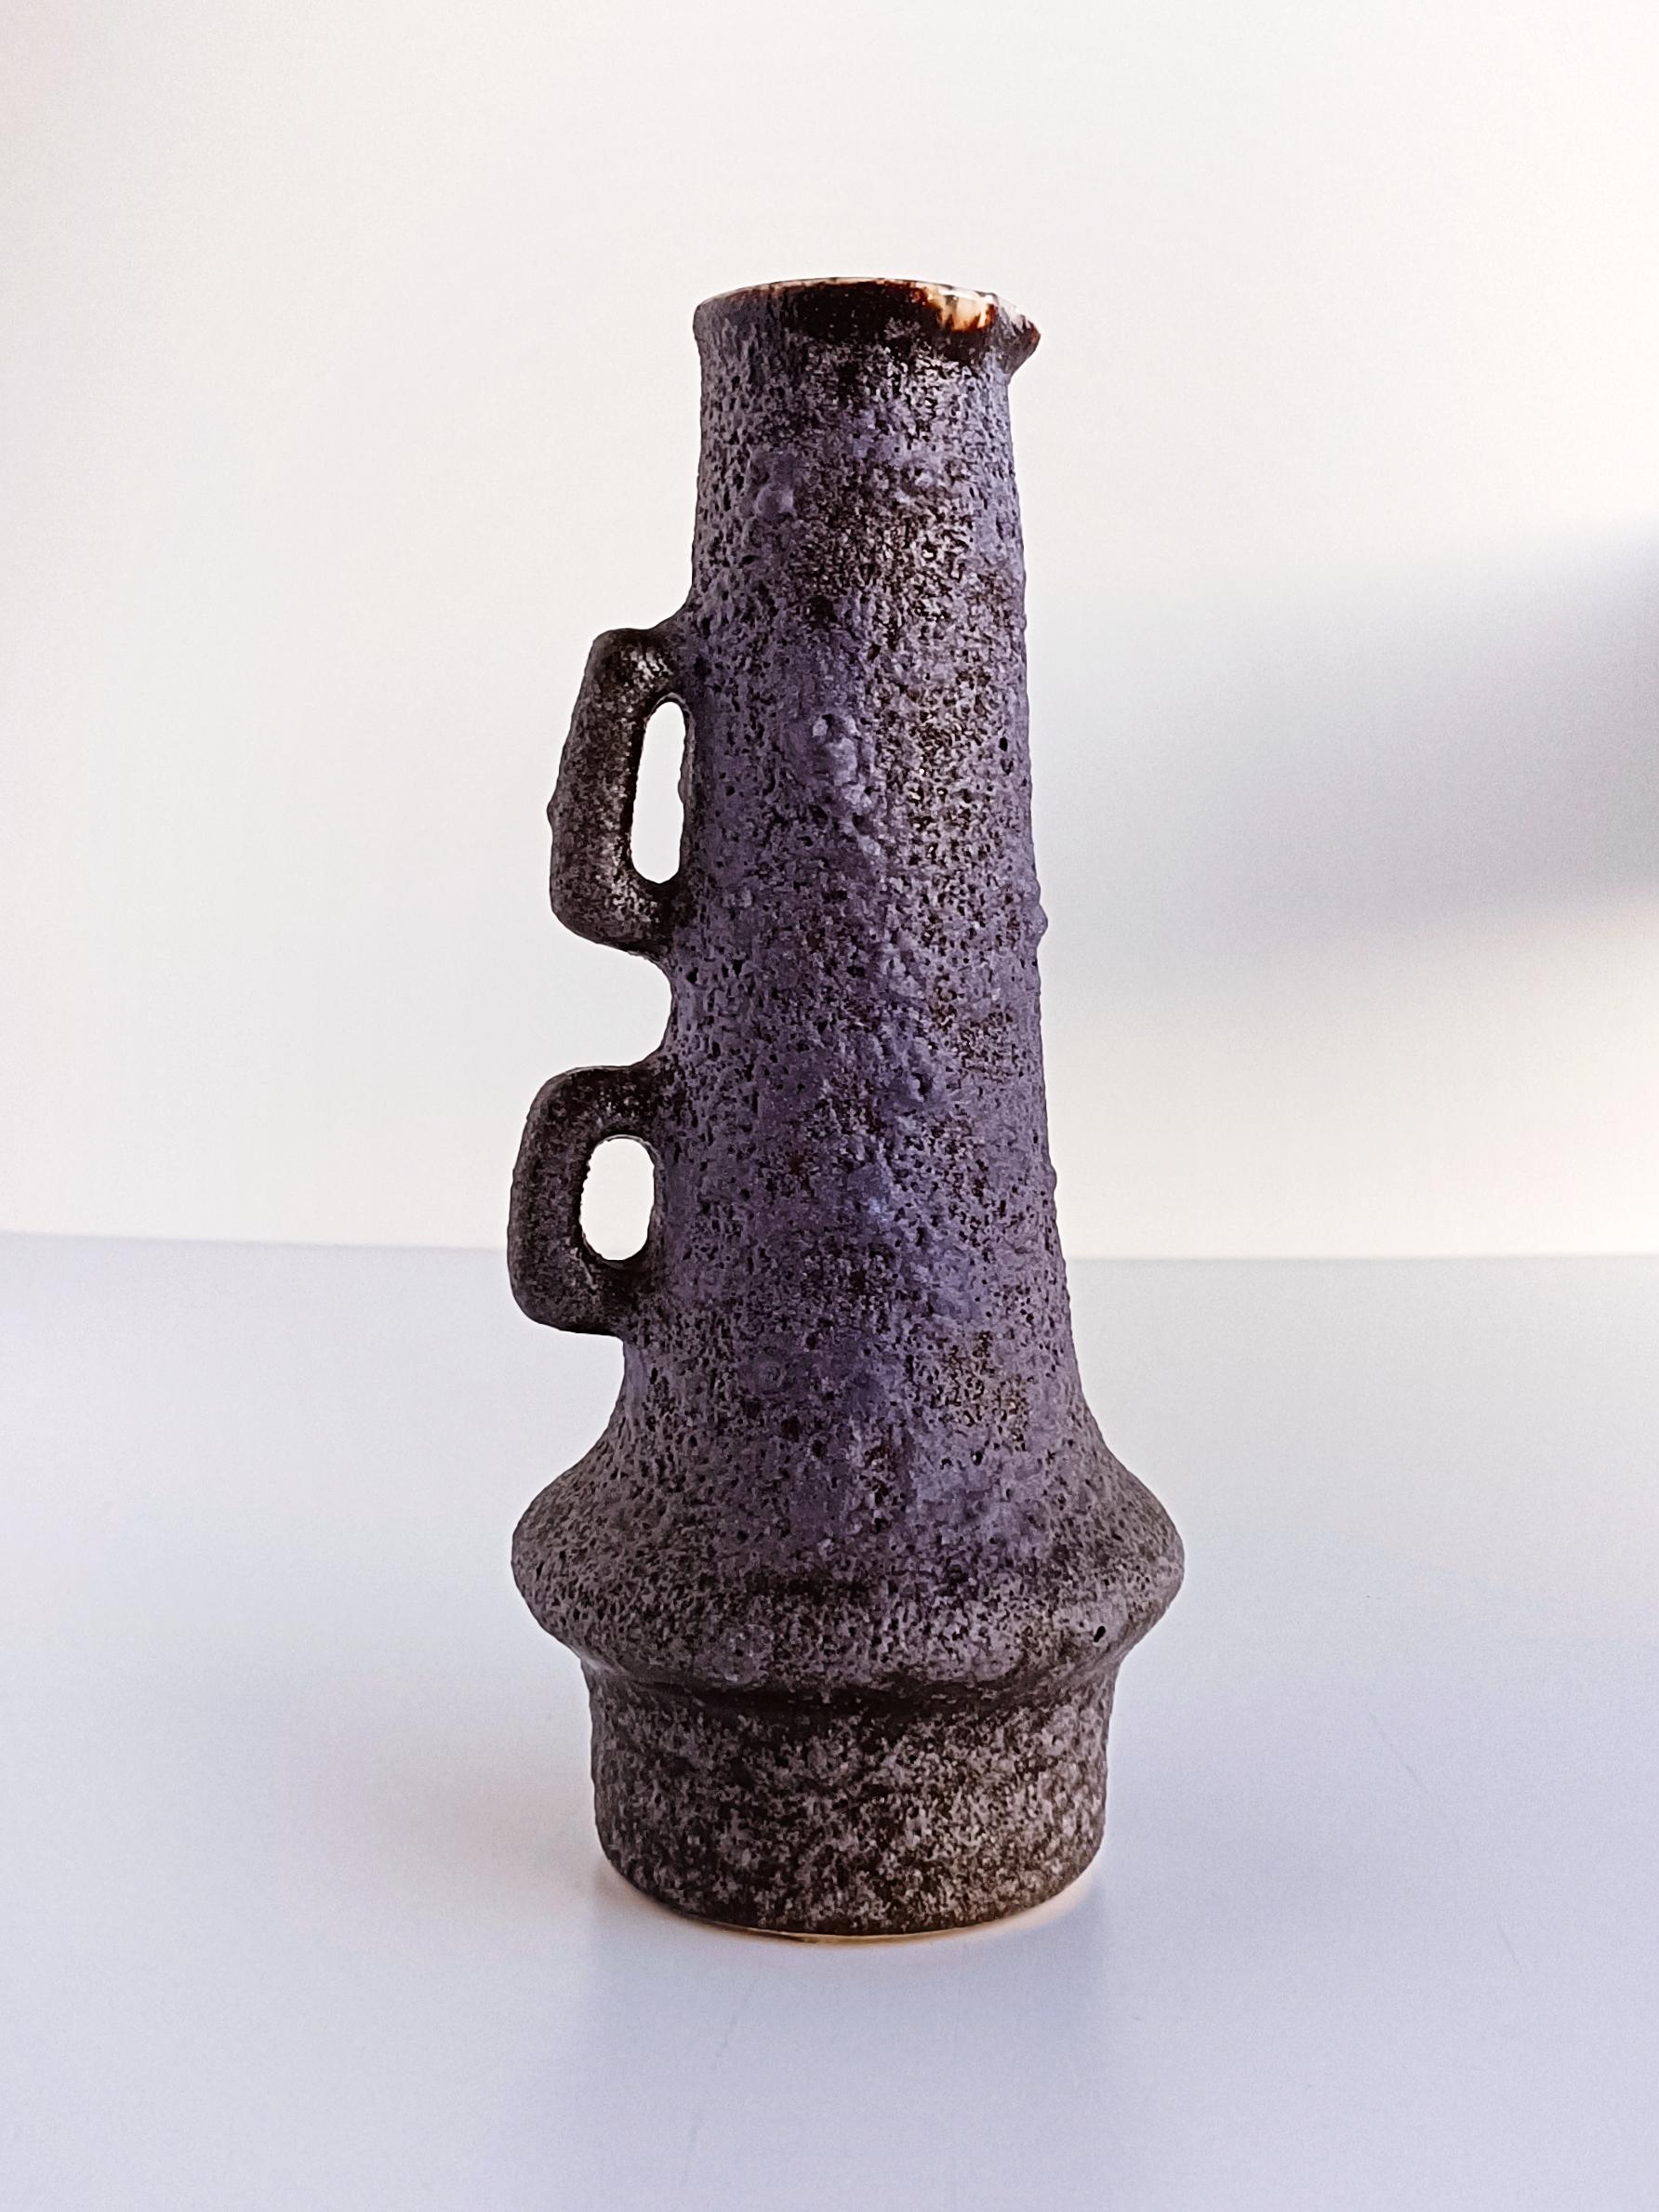 Ein schöner Keramikkrug mit der lilafarbenen Fata-Lava-Glasur, die so charakteristisch für die Produktion des Studios Vest Ceramic in den 1960er Jahren ist. Marius Van Woerden konzentrierte sich auf diese Art von brutalistischer Keramik und schuf